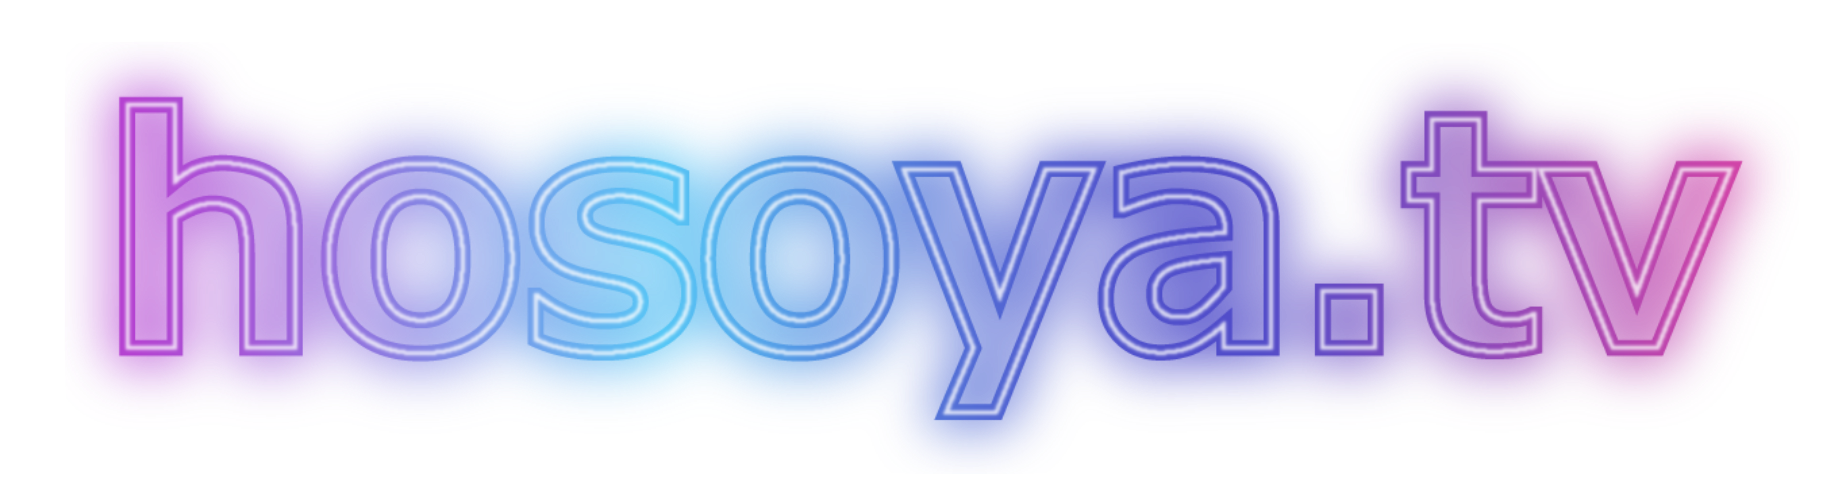 hosya.tv